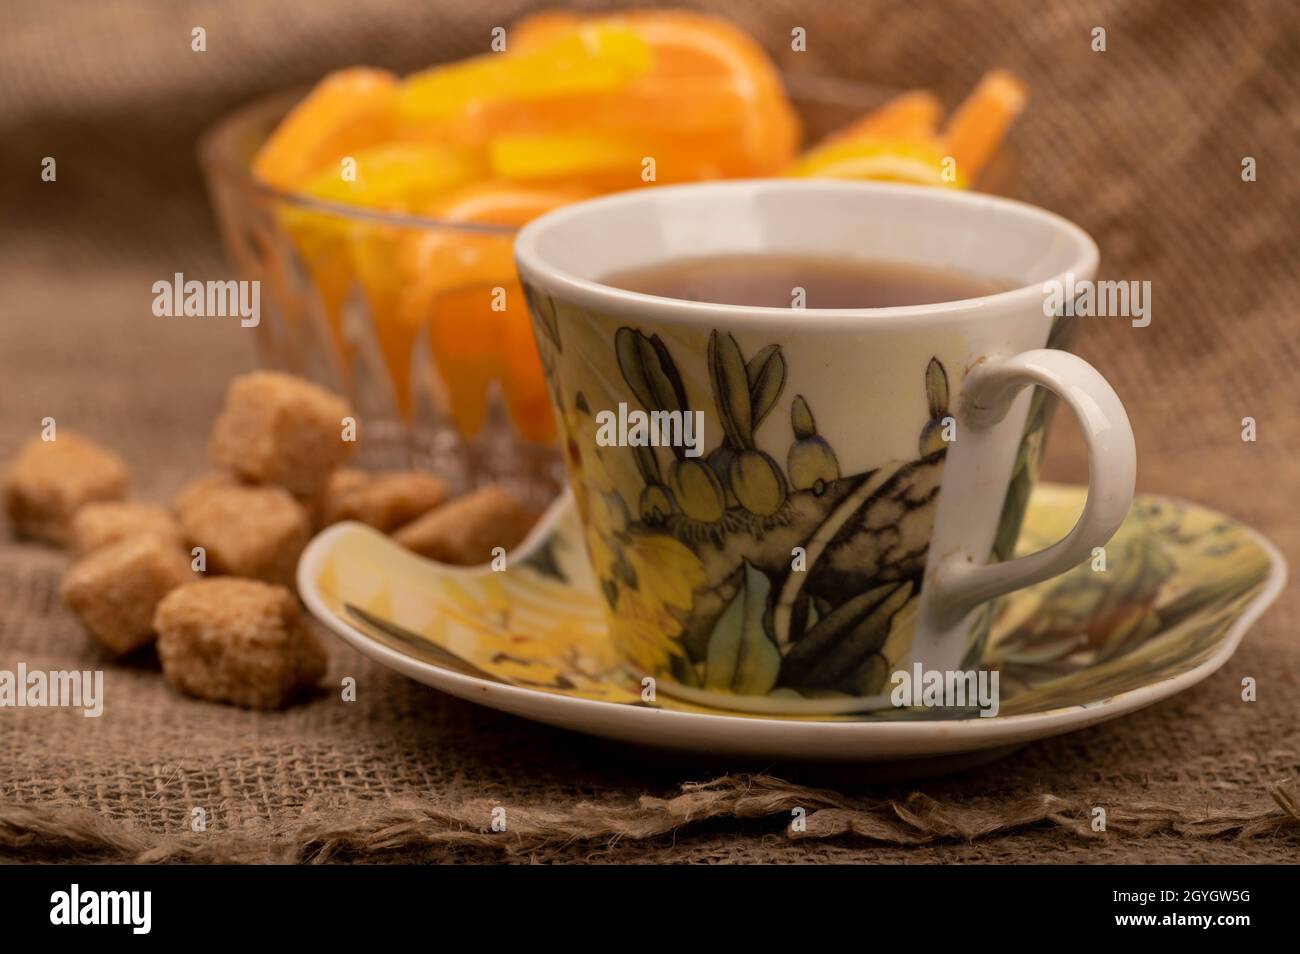 Tranches de citron marmelade multicolores dans un vase en verre, morceaux de sucre de canne brun et une tasse de thé sur une soucoupe, gros plan, sélectif Banque D'Images